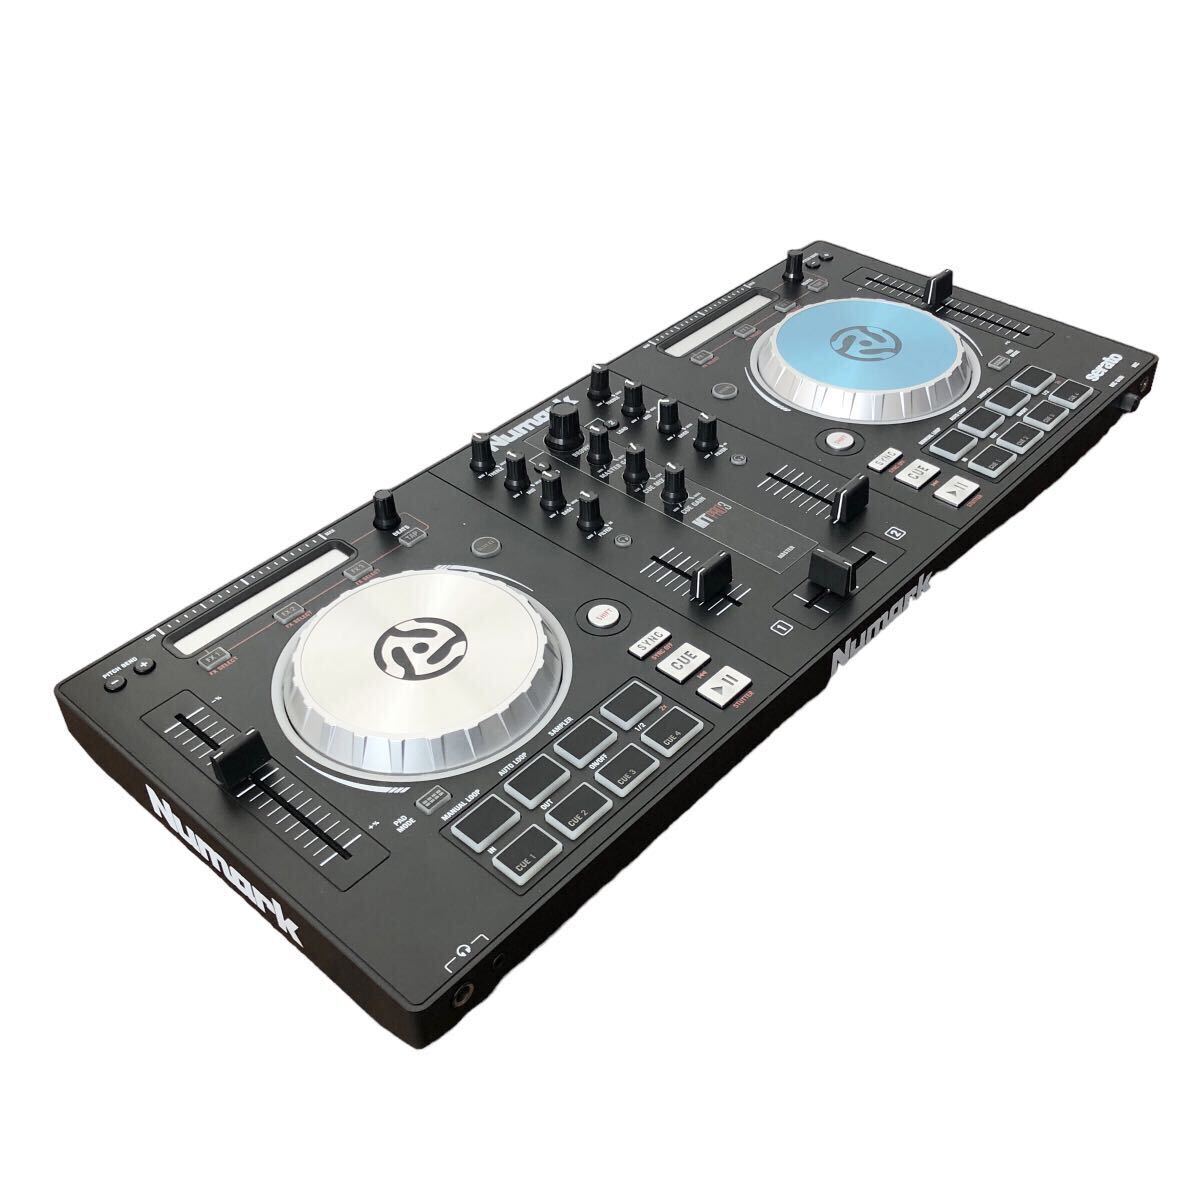 [ с футляром ]Numark Serato DJ контроллер MixTrack Pro 3n Mark nyu Mark 